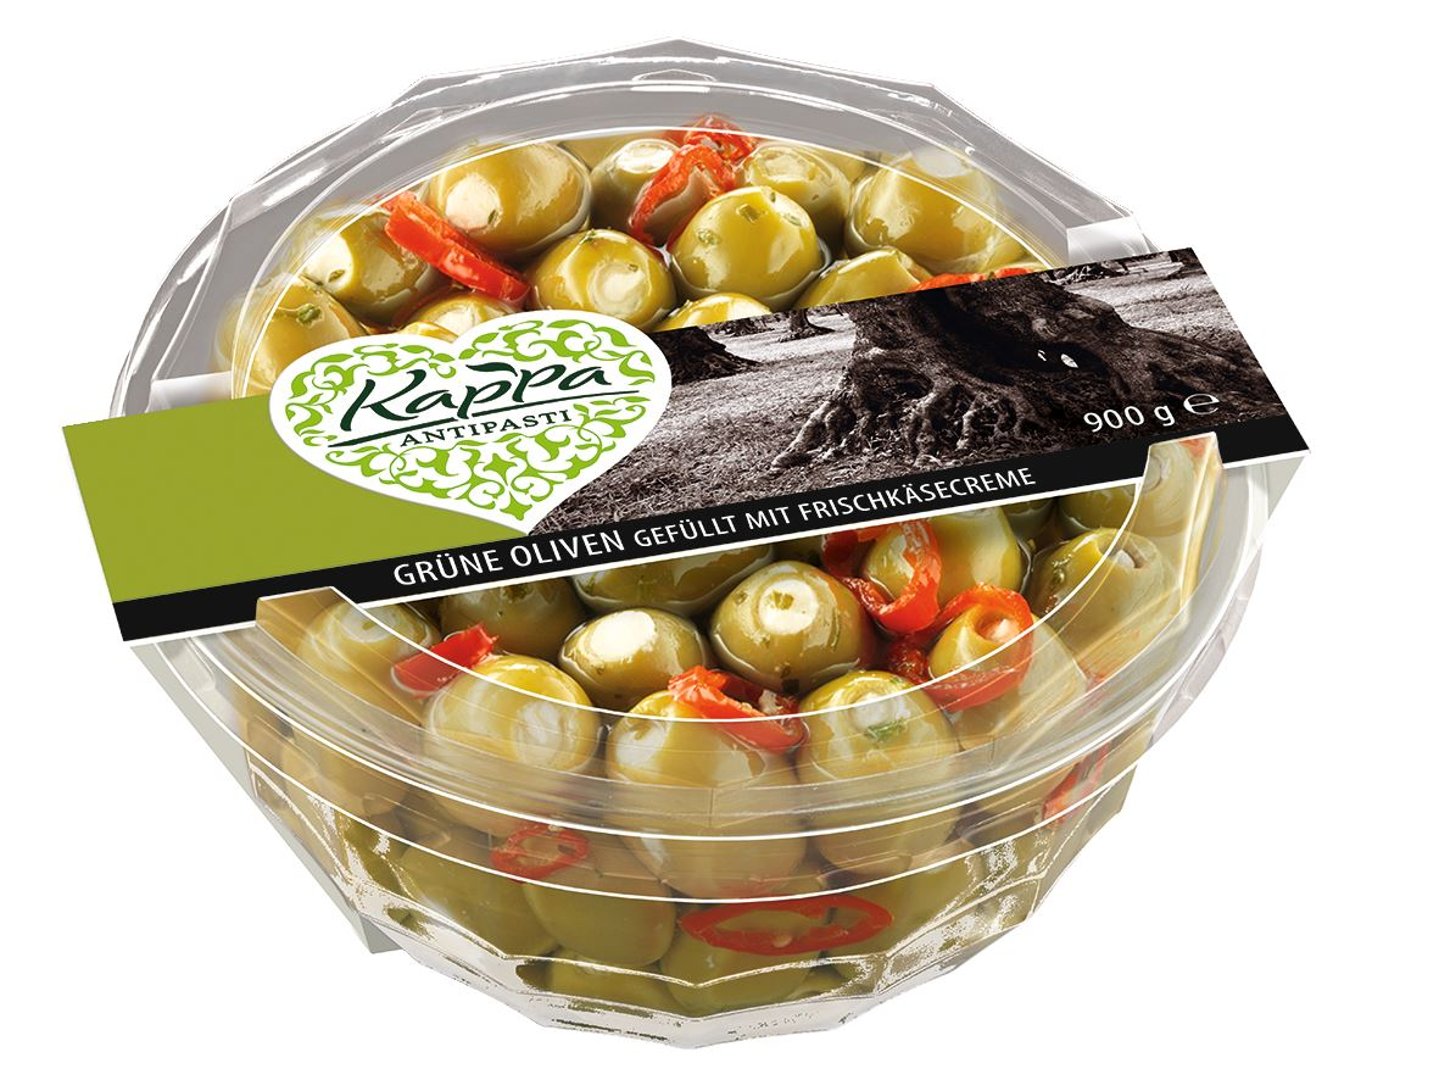 Kappa - Oliven gefüllt Grün Frischkäse gekühlt - 900 g Packung